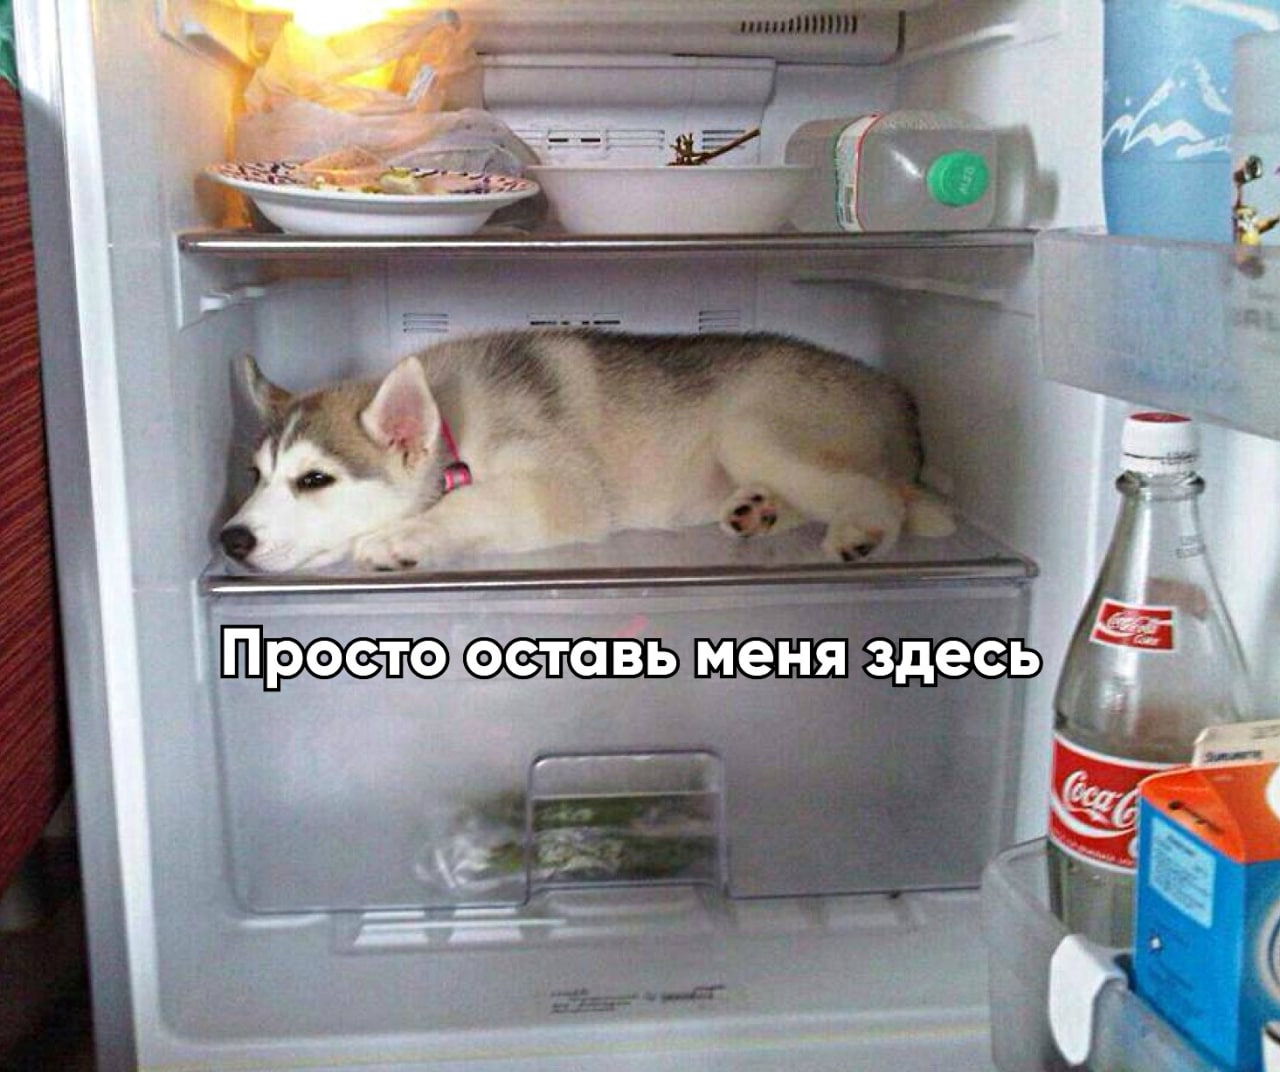 Прикольный холодильник